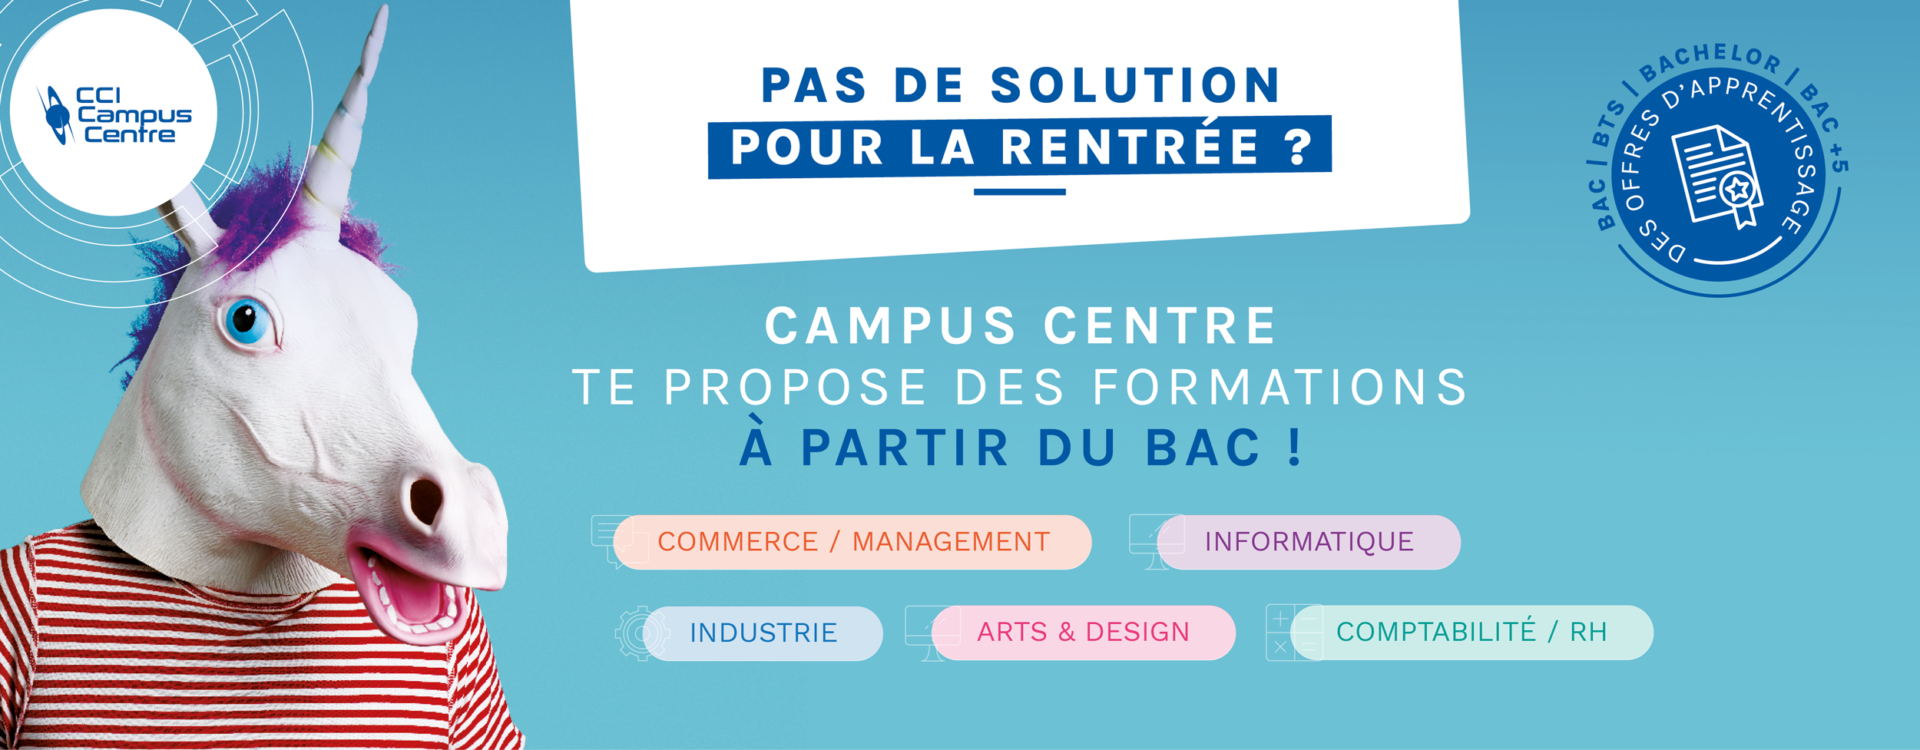 Bannière CCI Campus Centre